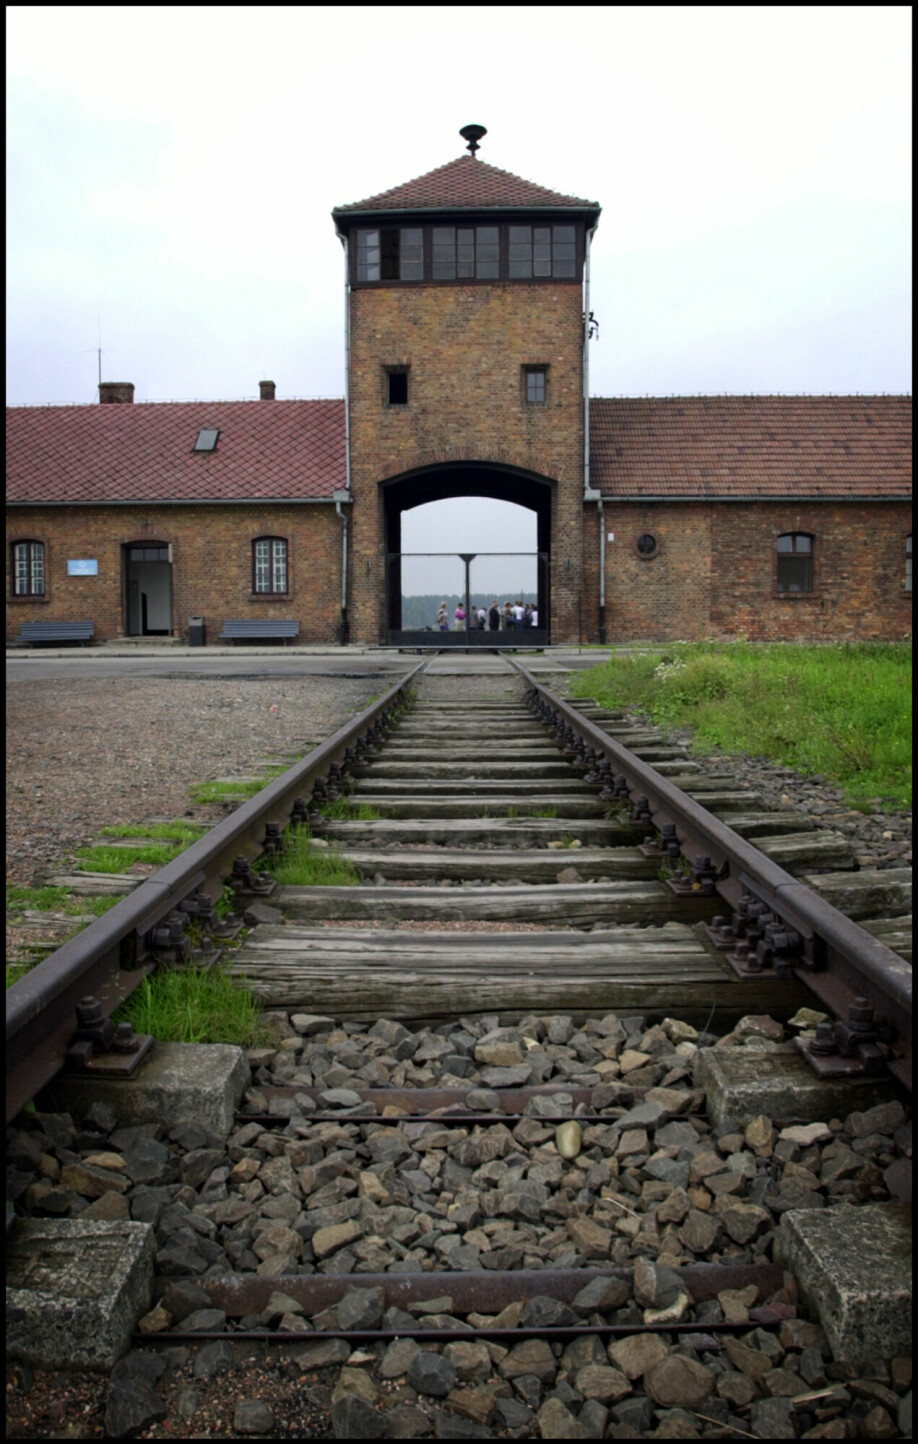 Konsentrasjonsleiren Auschwitz. Jernbanesporet førte rett inn i gasskammeret. Bildet tatt i 2001.